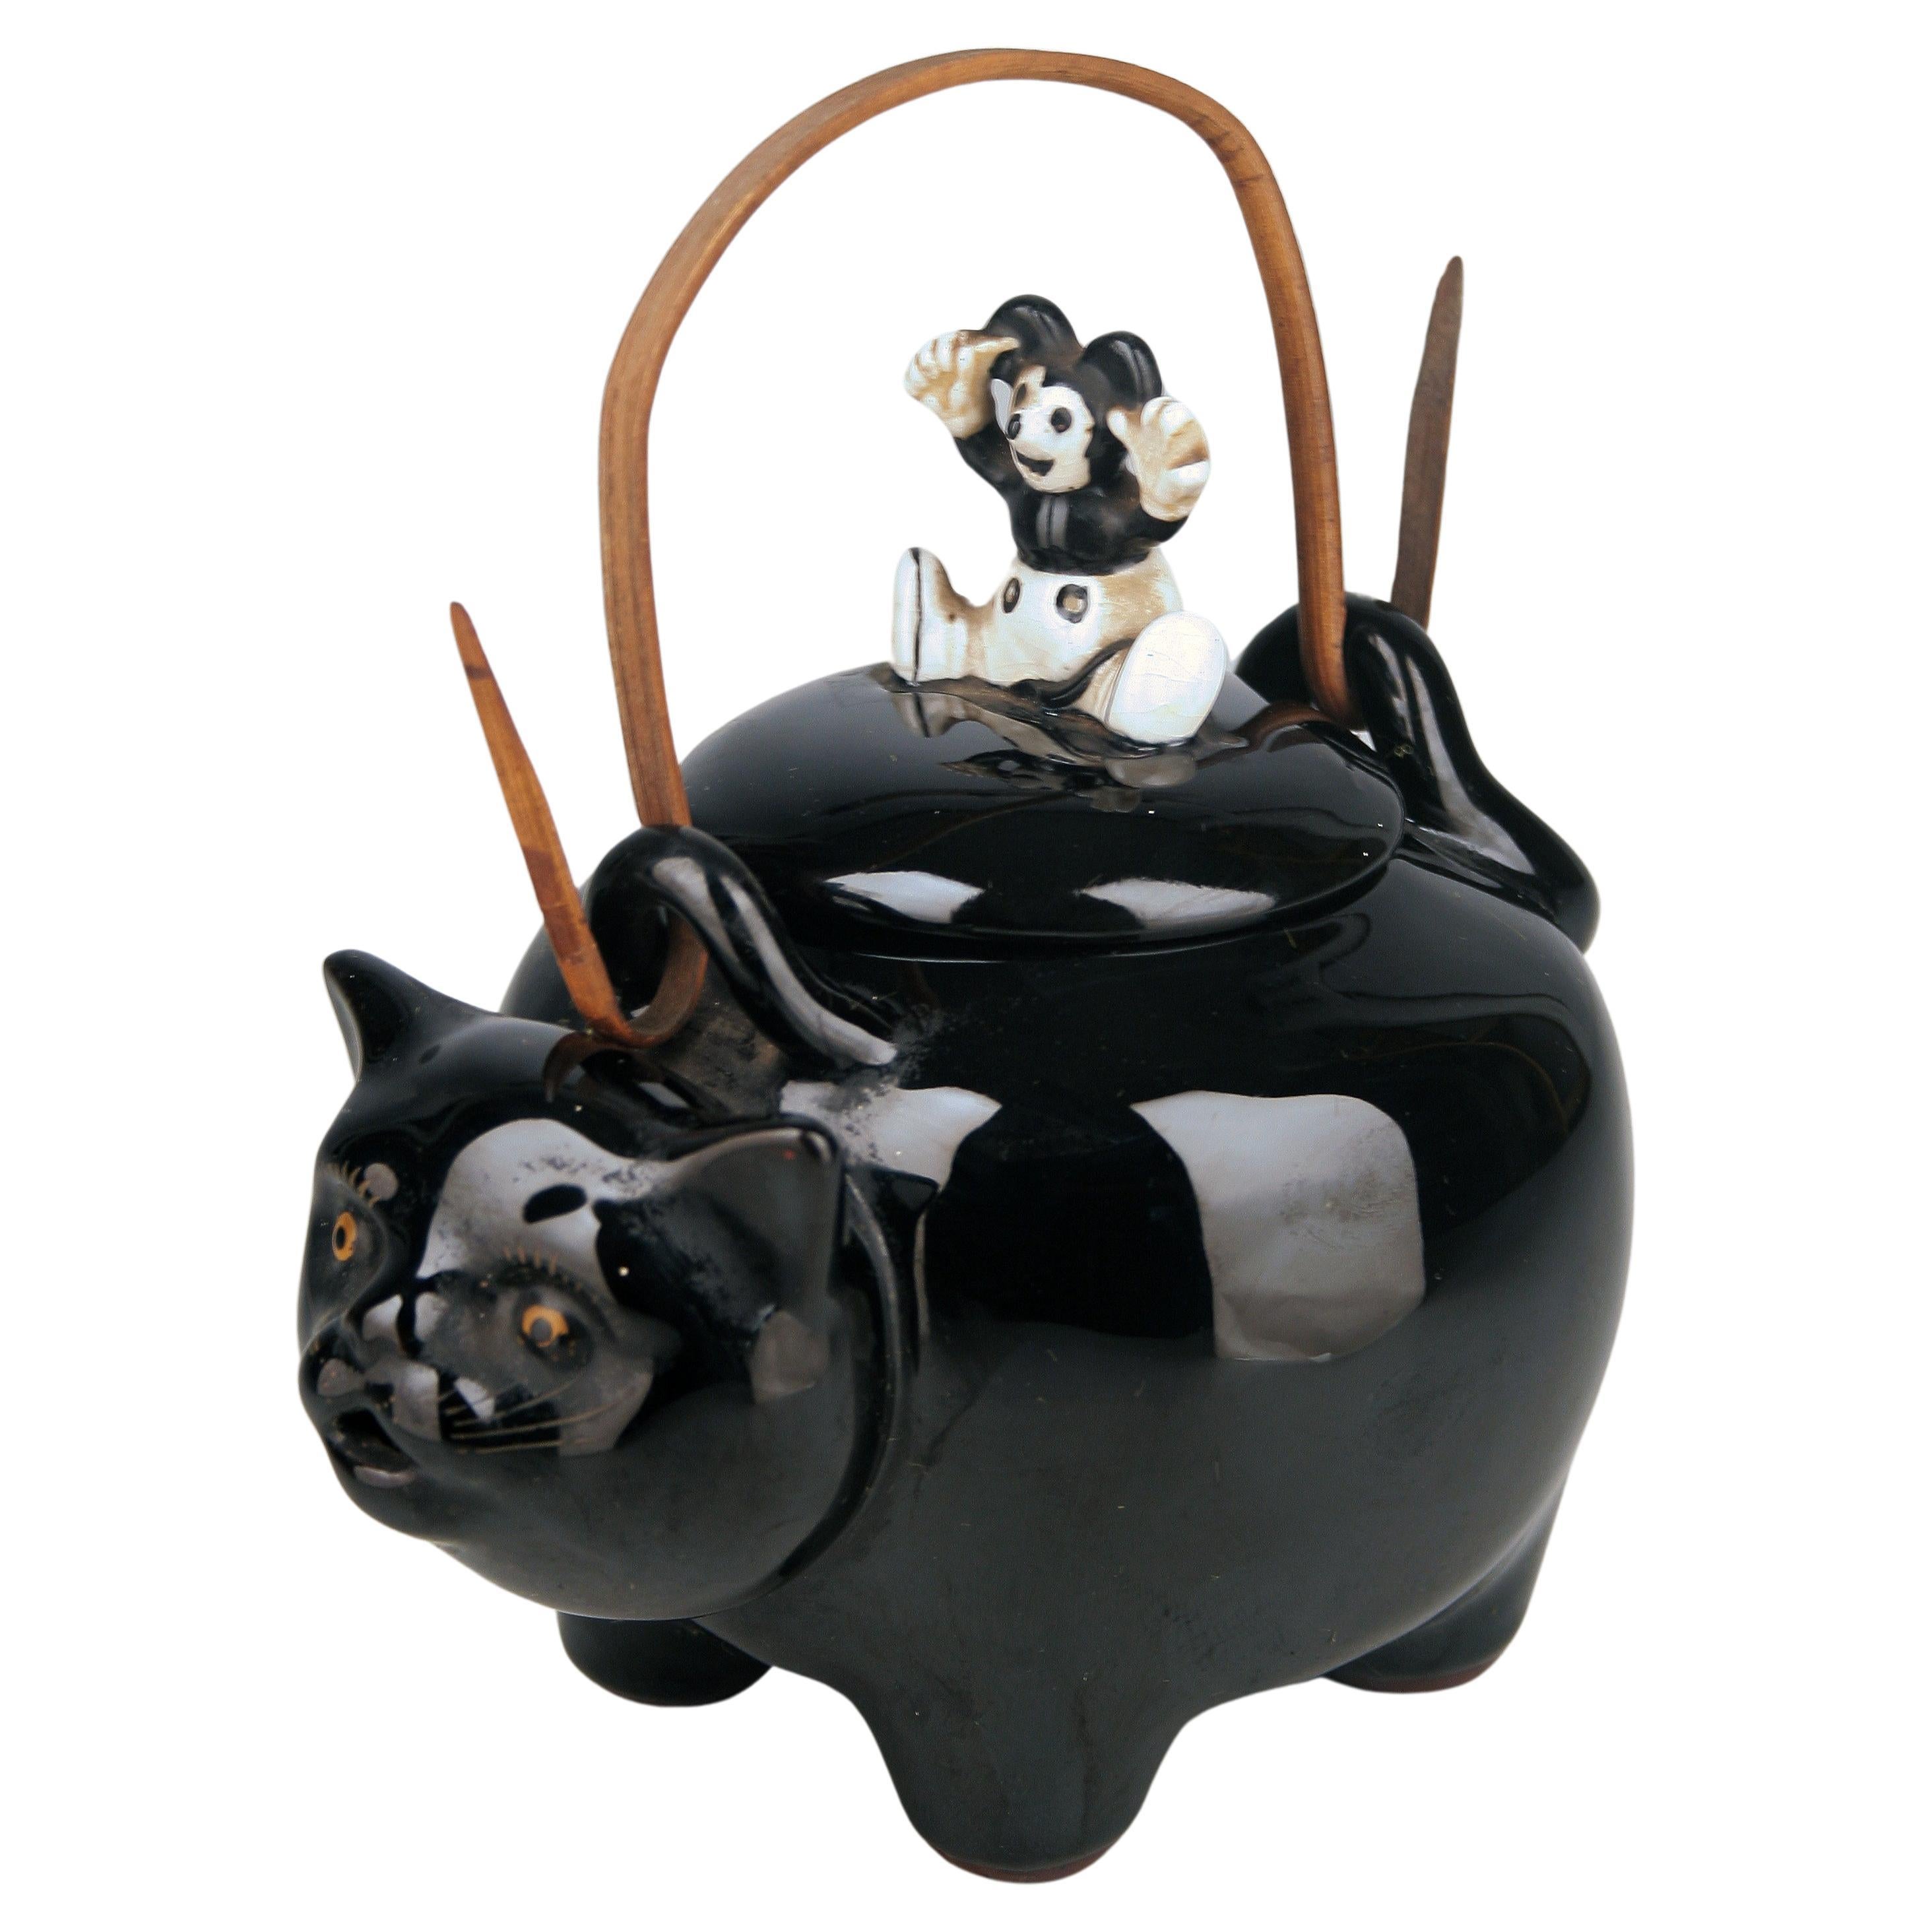 20. Jh./Shōwa-Ära Japanische glasierte Porzellan-Teekanne mit schwarzer Katze und Maus-Deckel